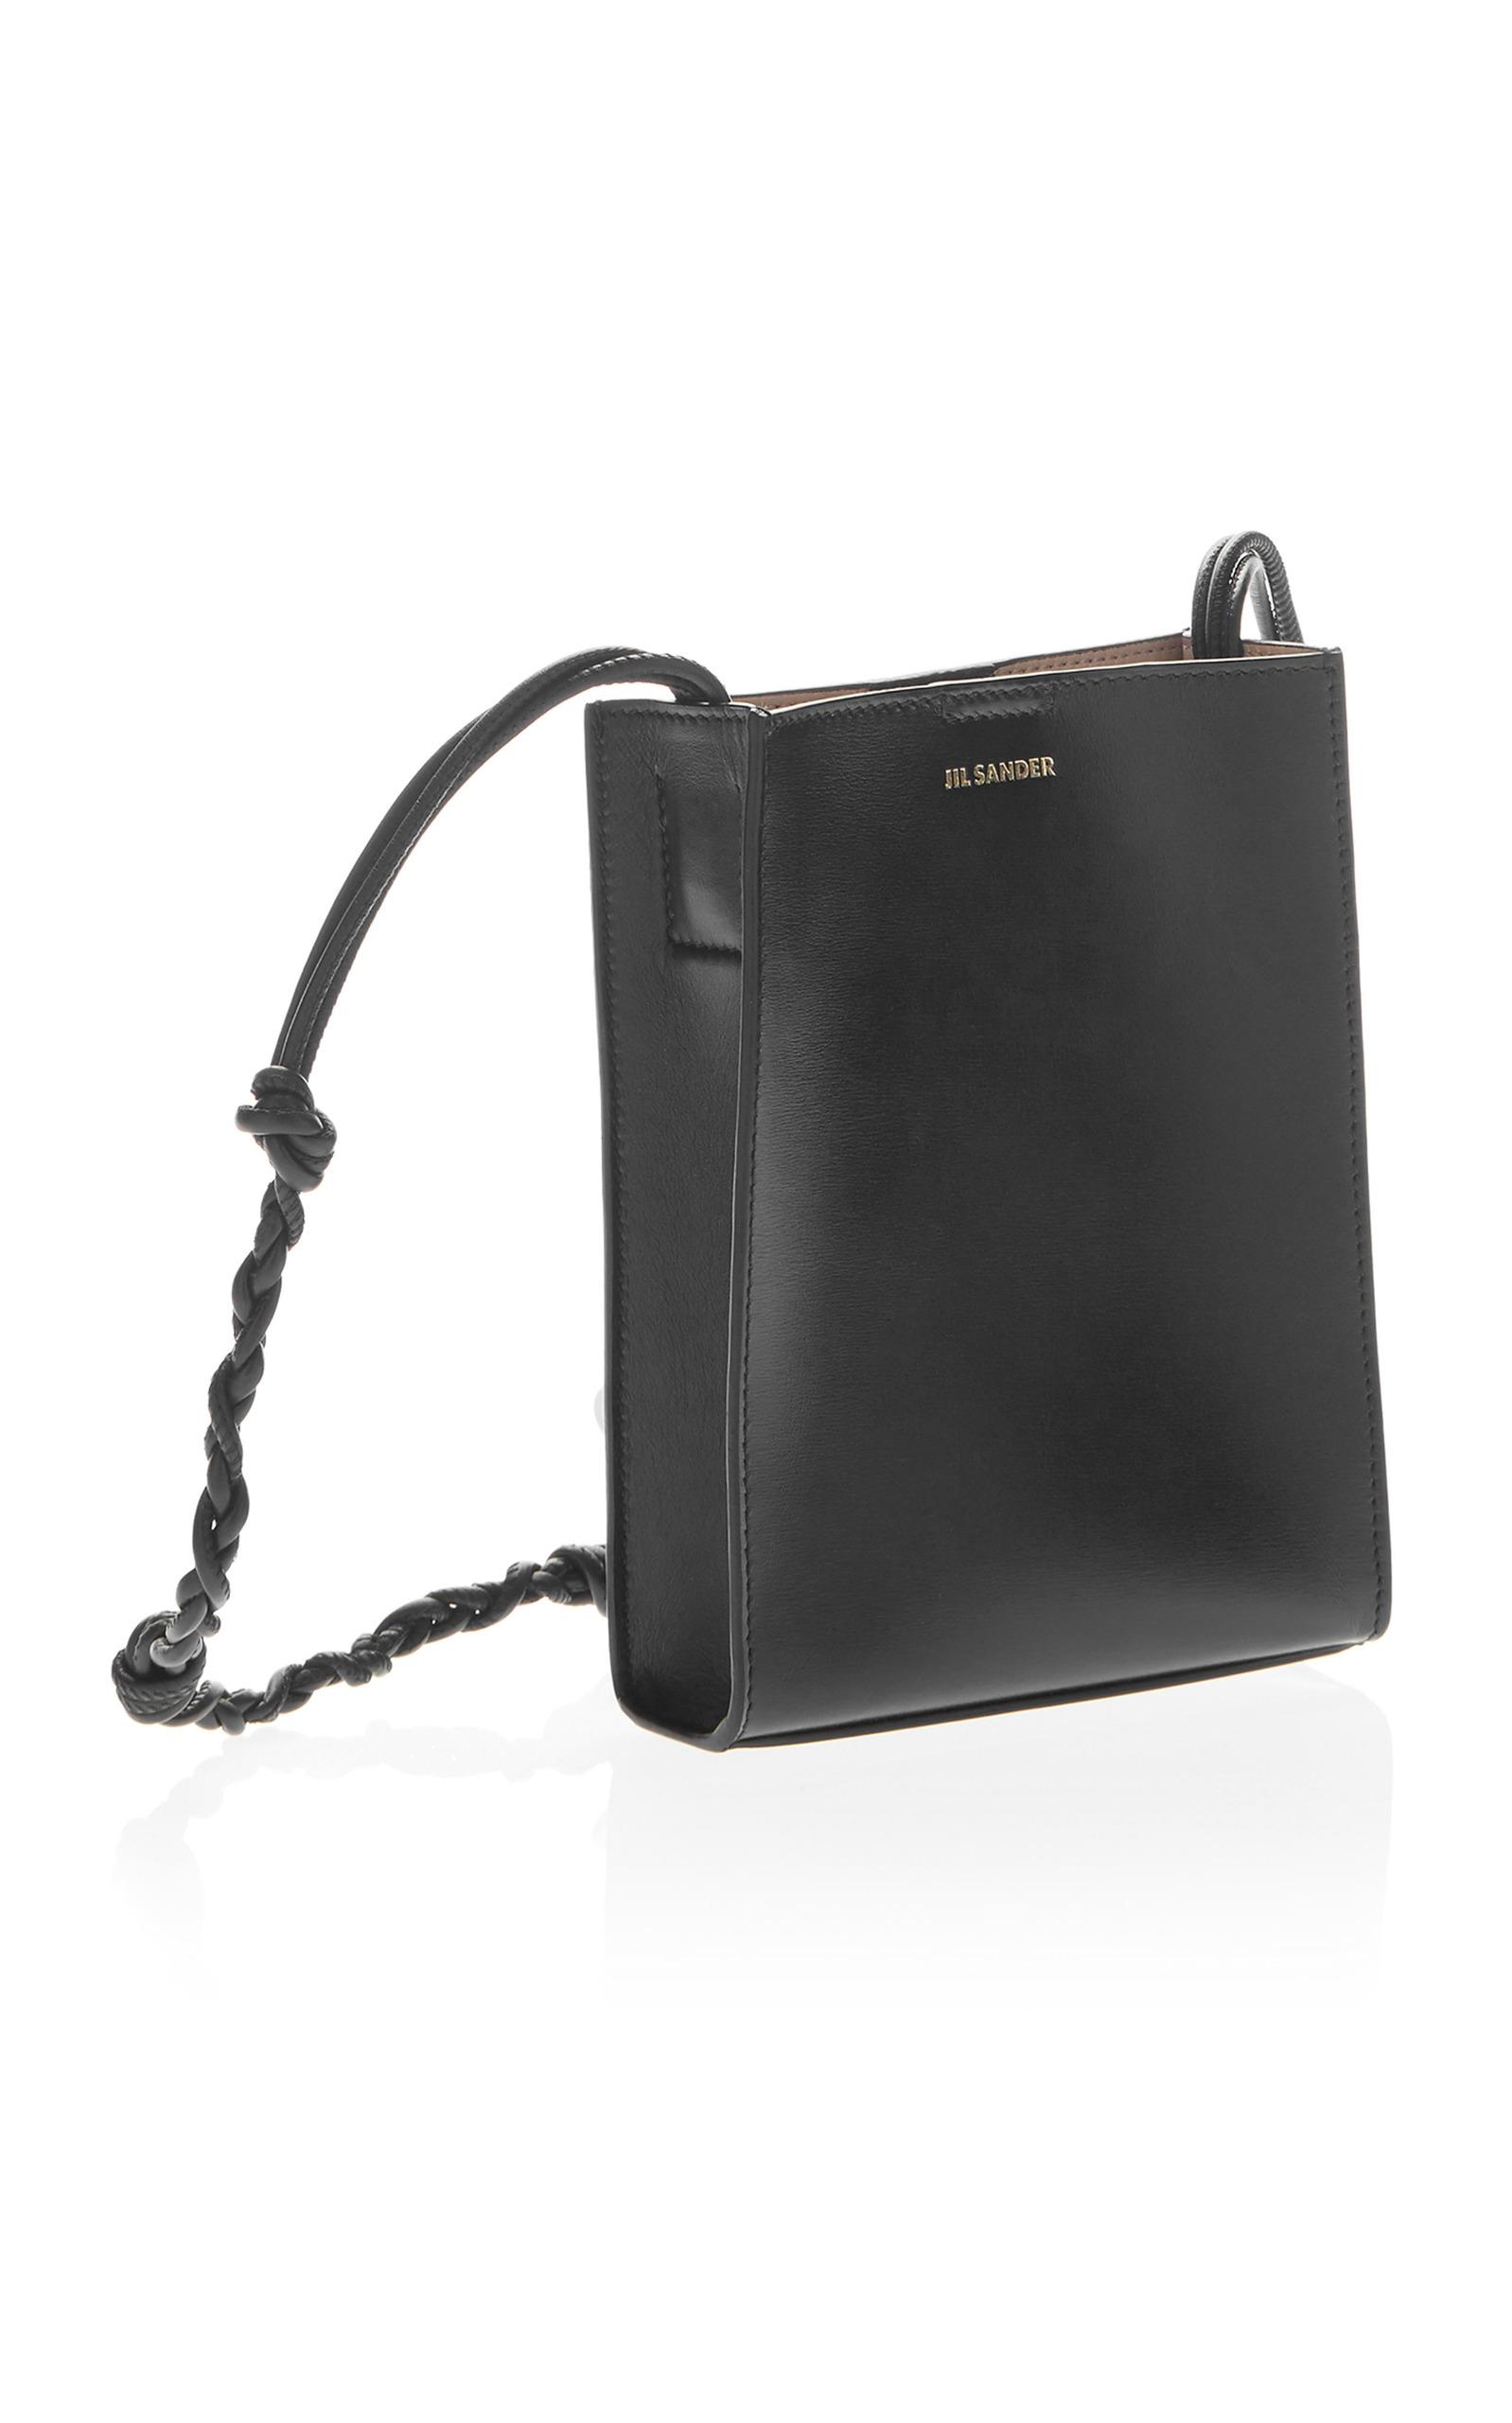 Jil Sander Leather Small Tangle Shoulder Bag in Black - Lyst